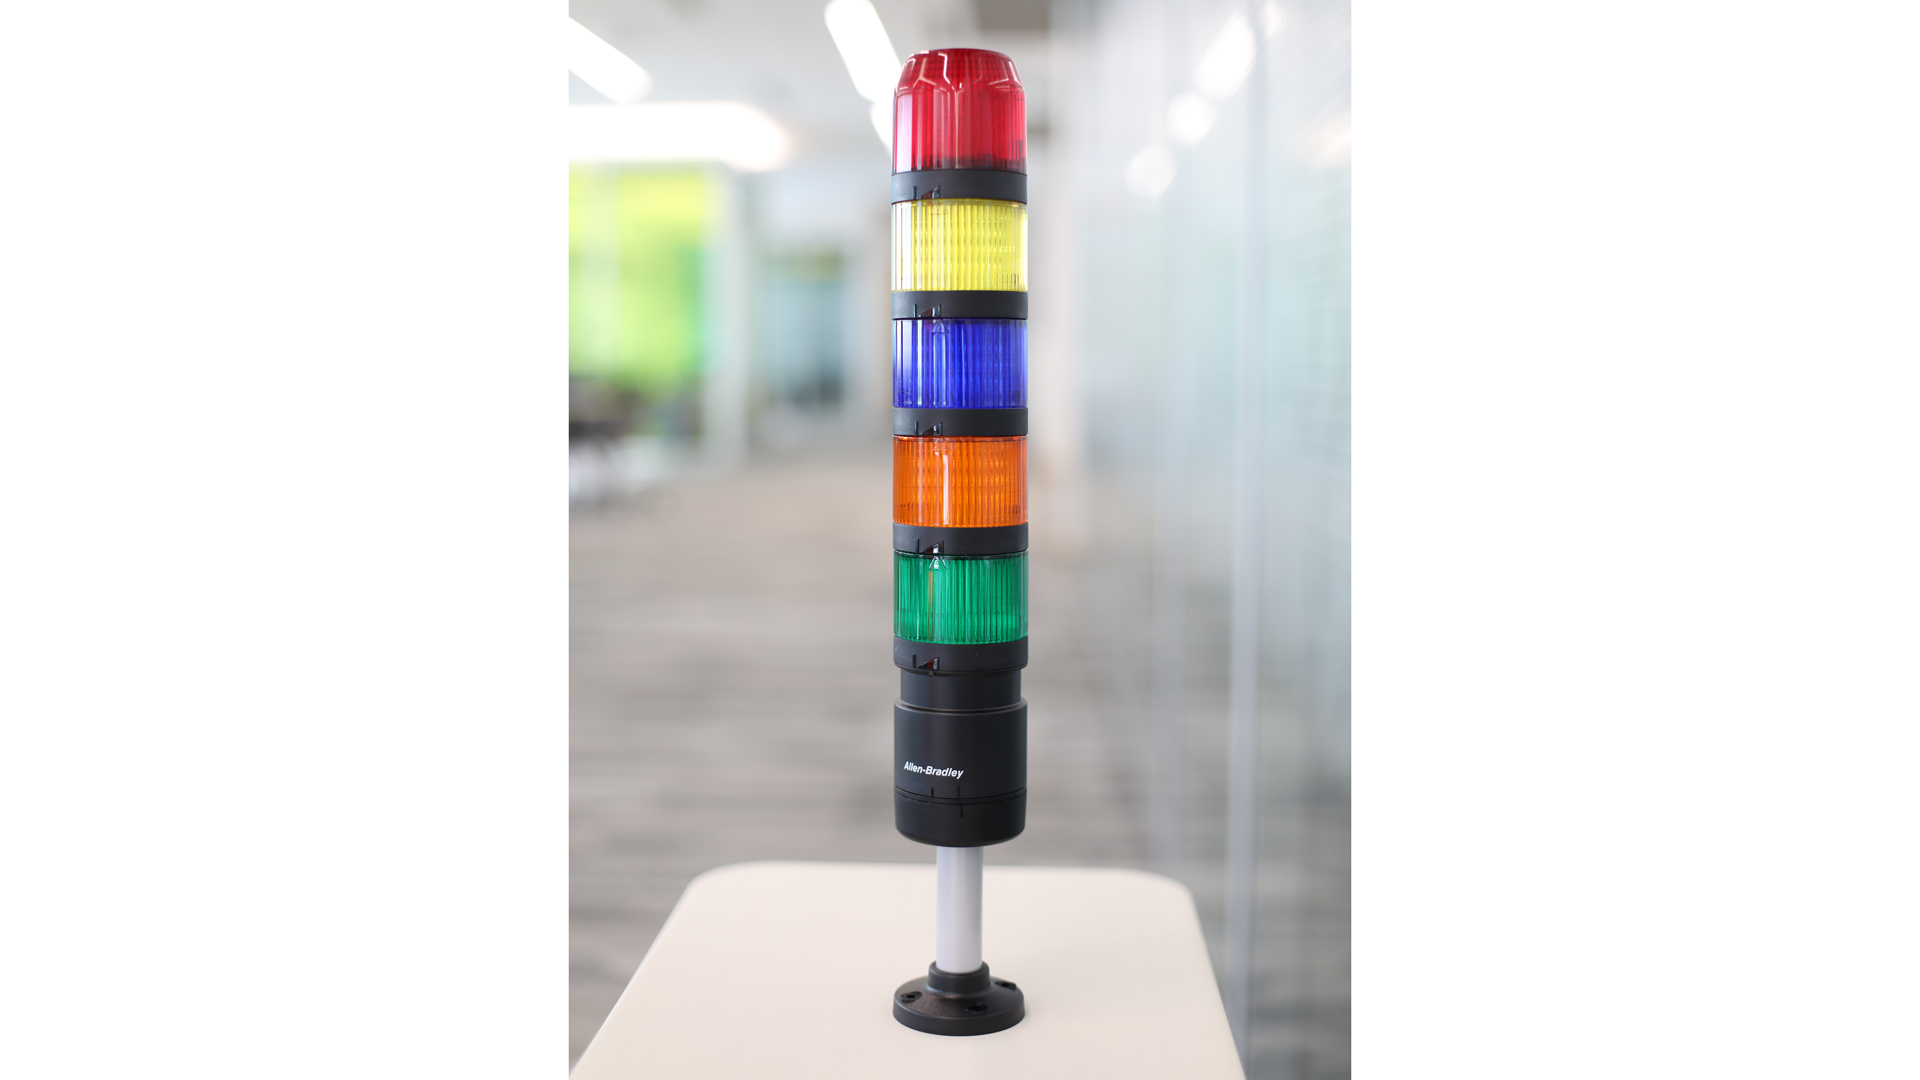 Colonne lumineuse IO-Link sur une table. De haut en bas, des modules lumineux éteints rouge, jaune, bleu, orange et vert, et une tige de montage noire 